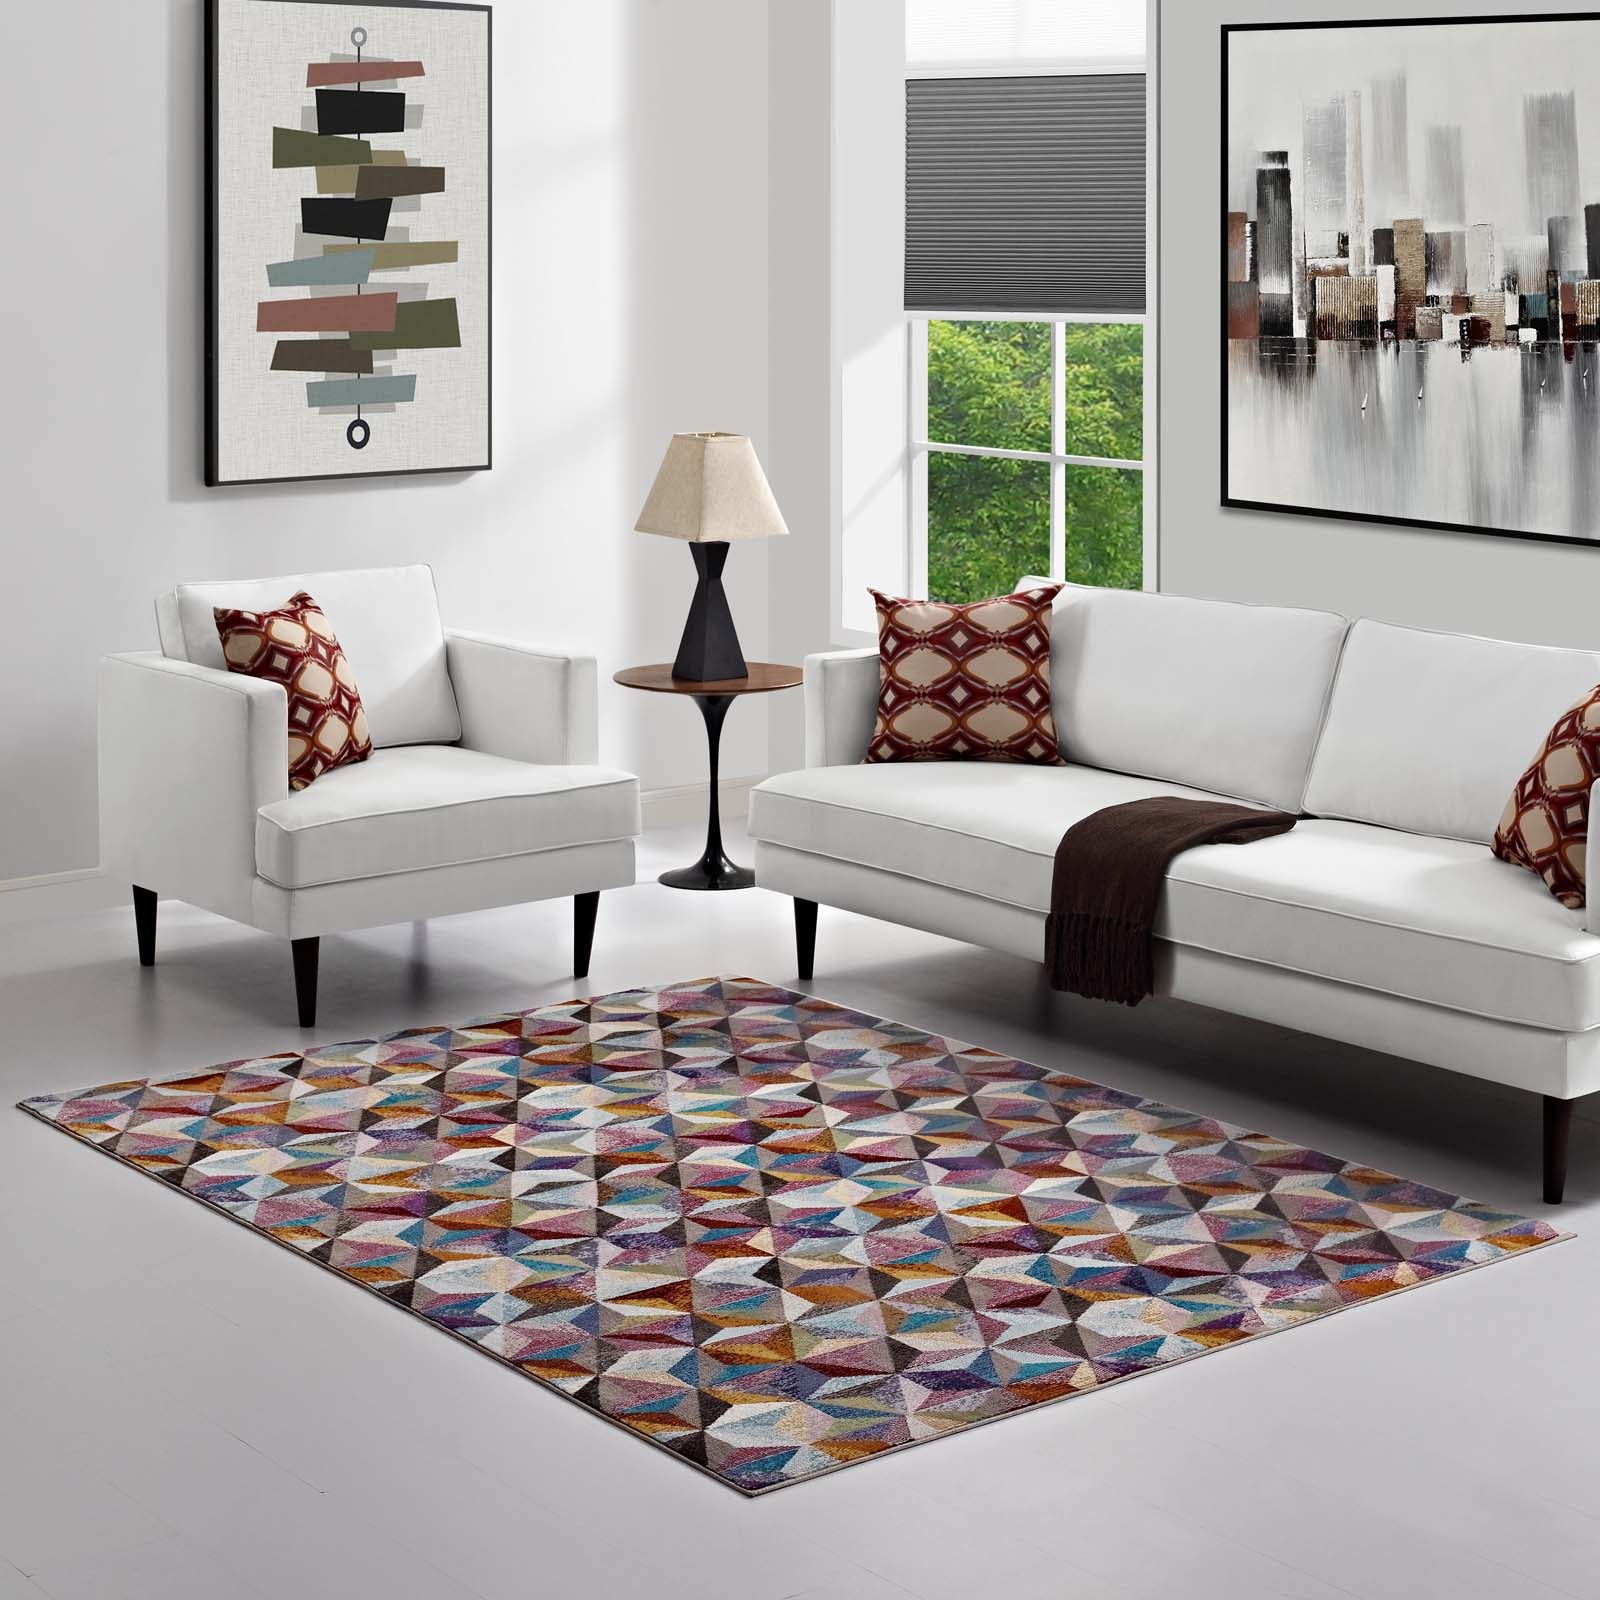 Arisa Geometric Hexagon Mosaic 5x8 Area Rug-Indoor Area Rug-Modway-Wall2Wall Furnishings